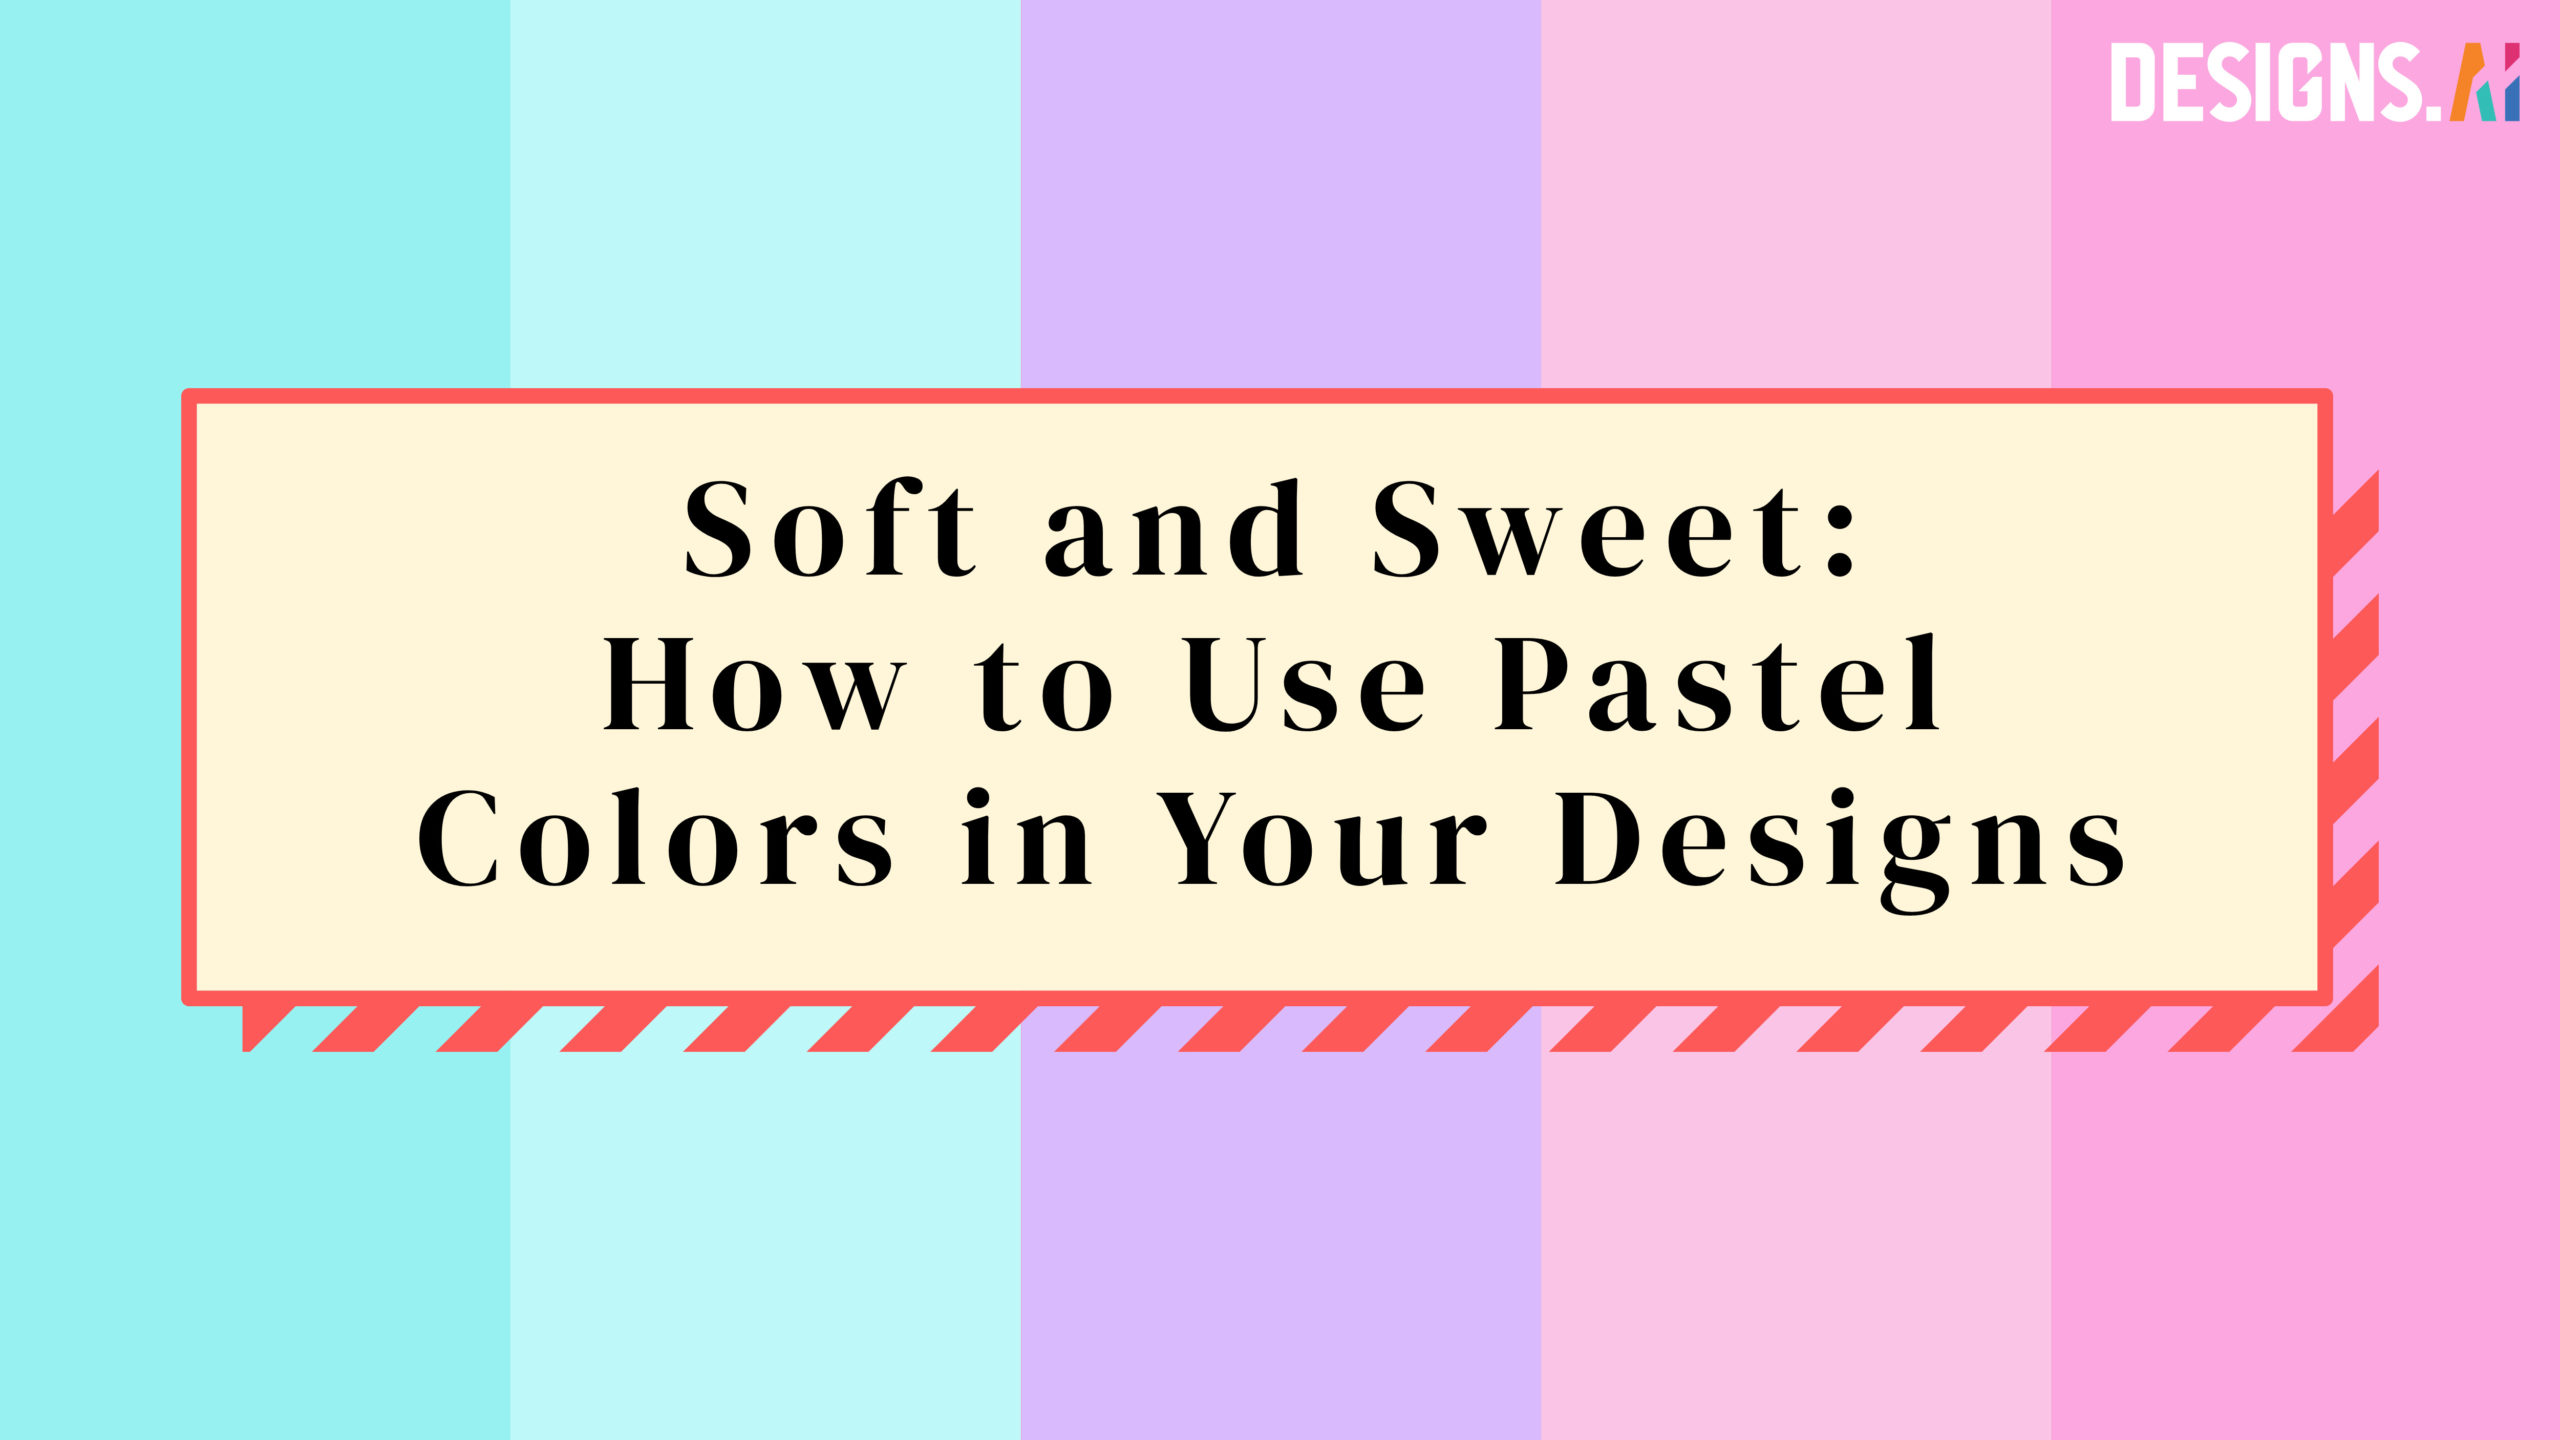 Pastel Logo Design + 24 Inspiring Pastel Color Palettes